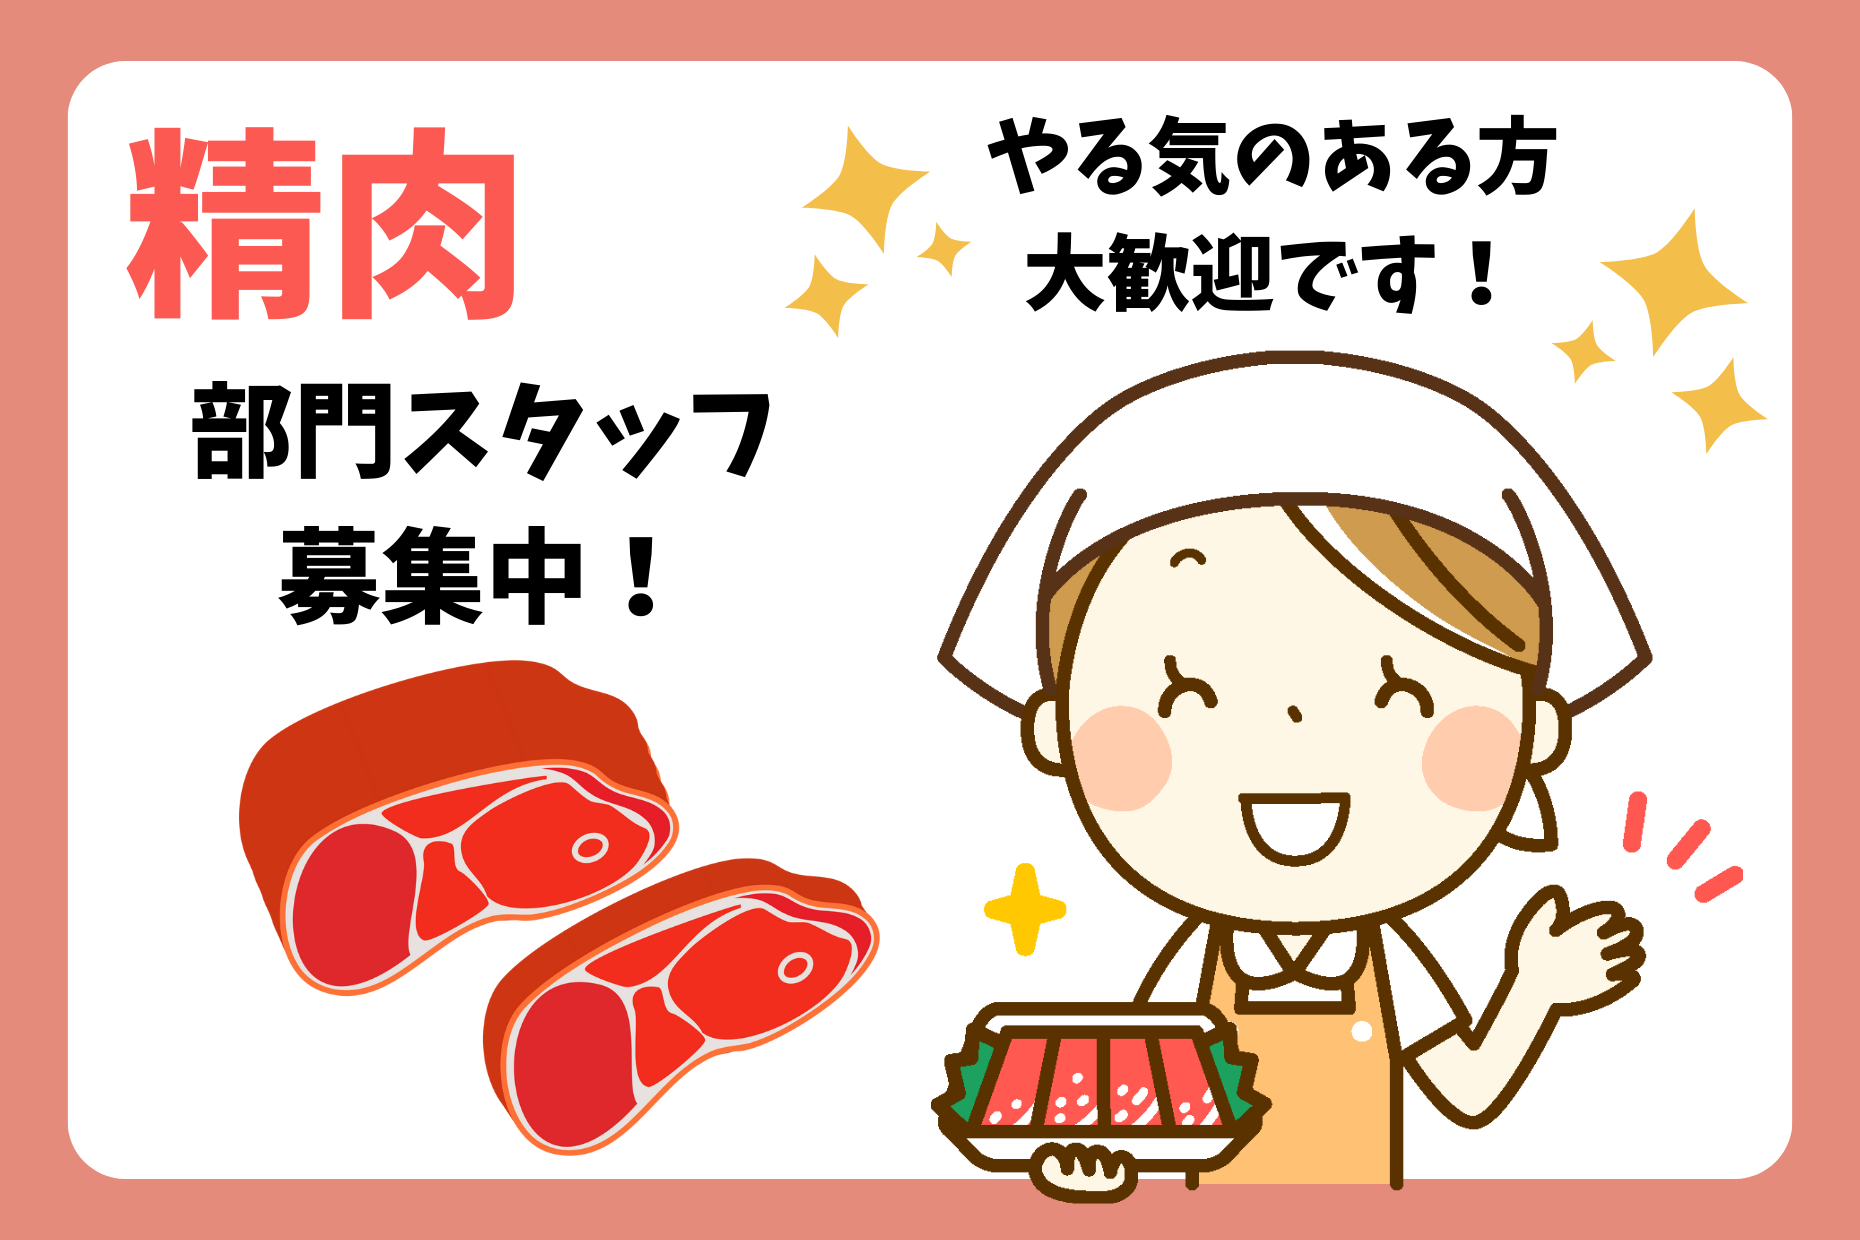 【足立区】スーパーの精肉業務／高時給1600円 イメージ